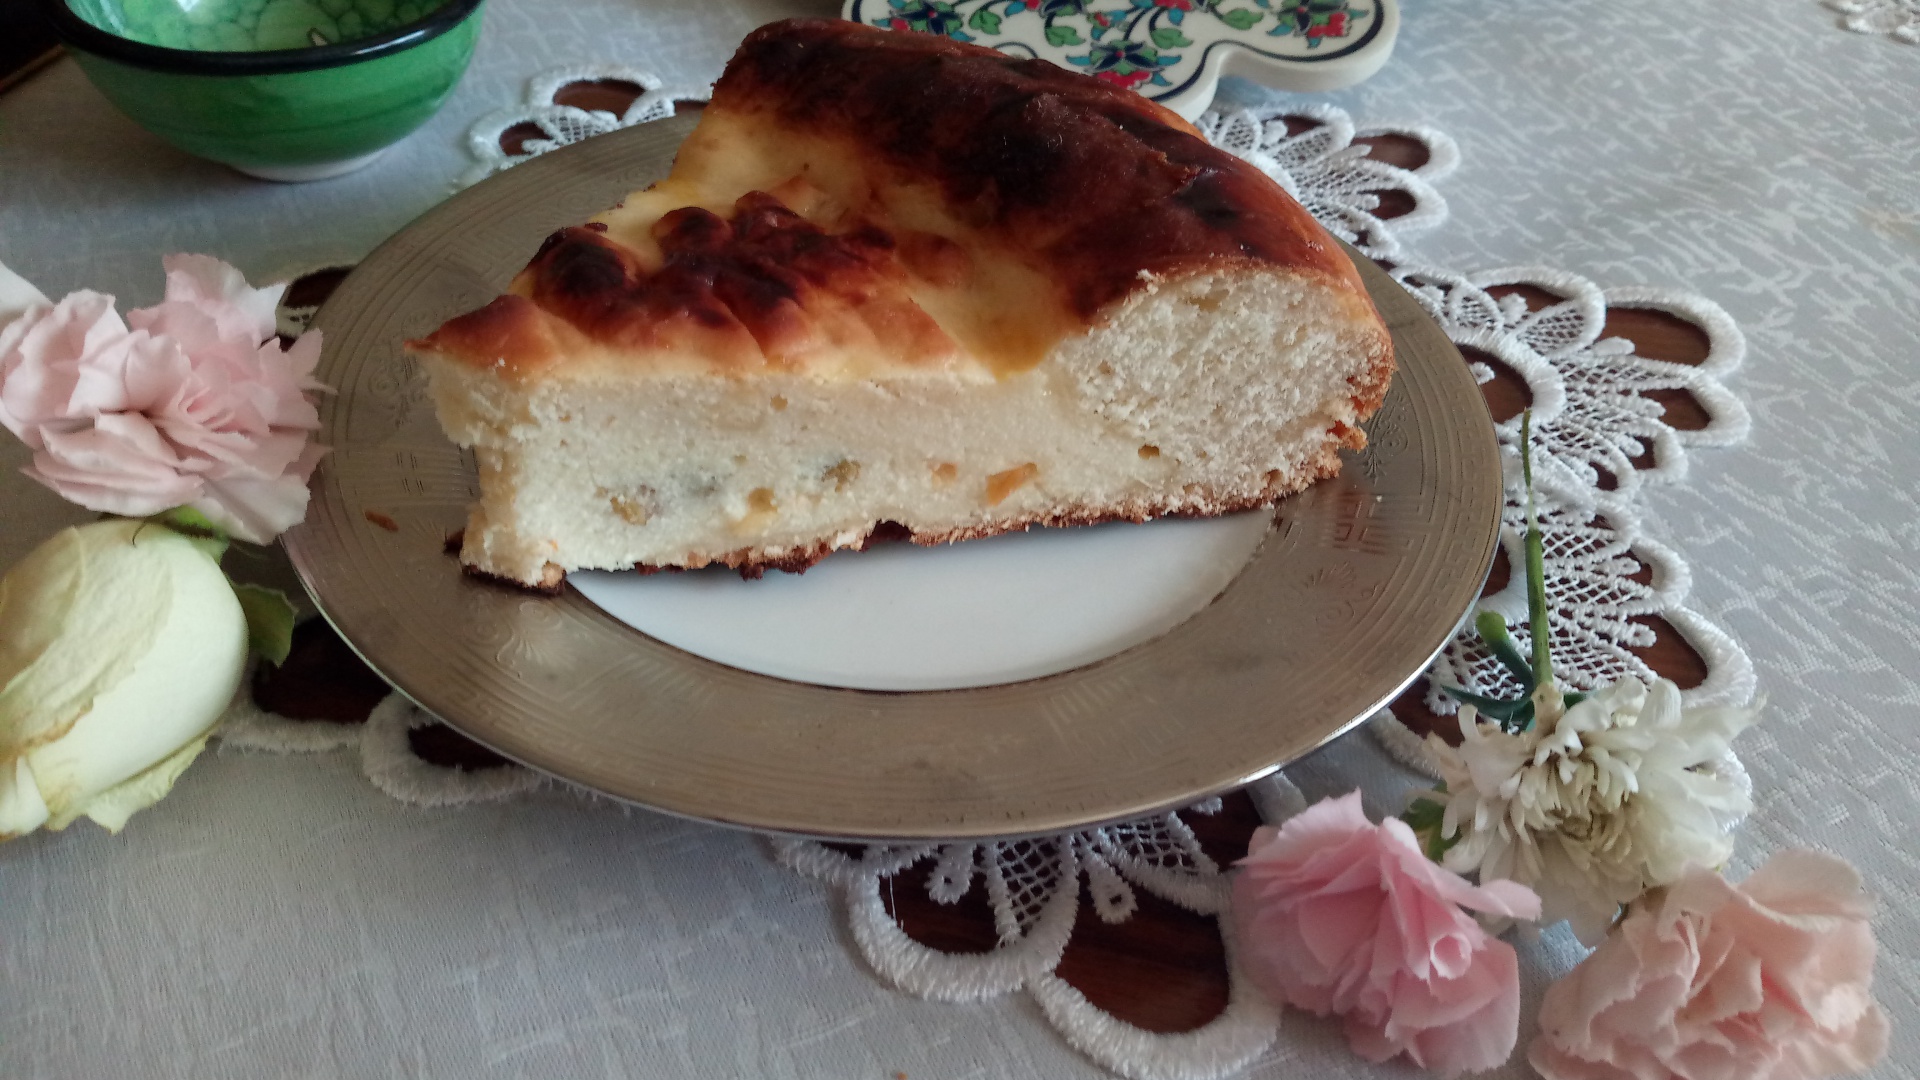 Pasca moldoveneasca cu branza dulce si aluat de cozonac